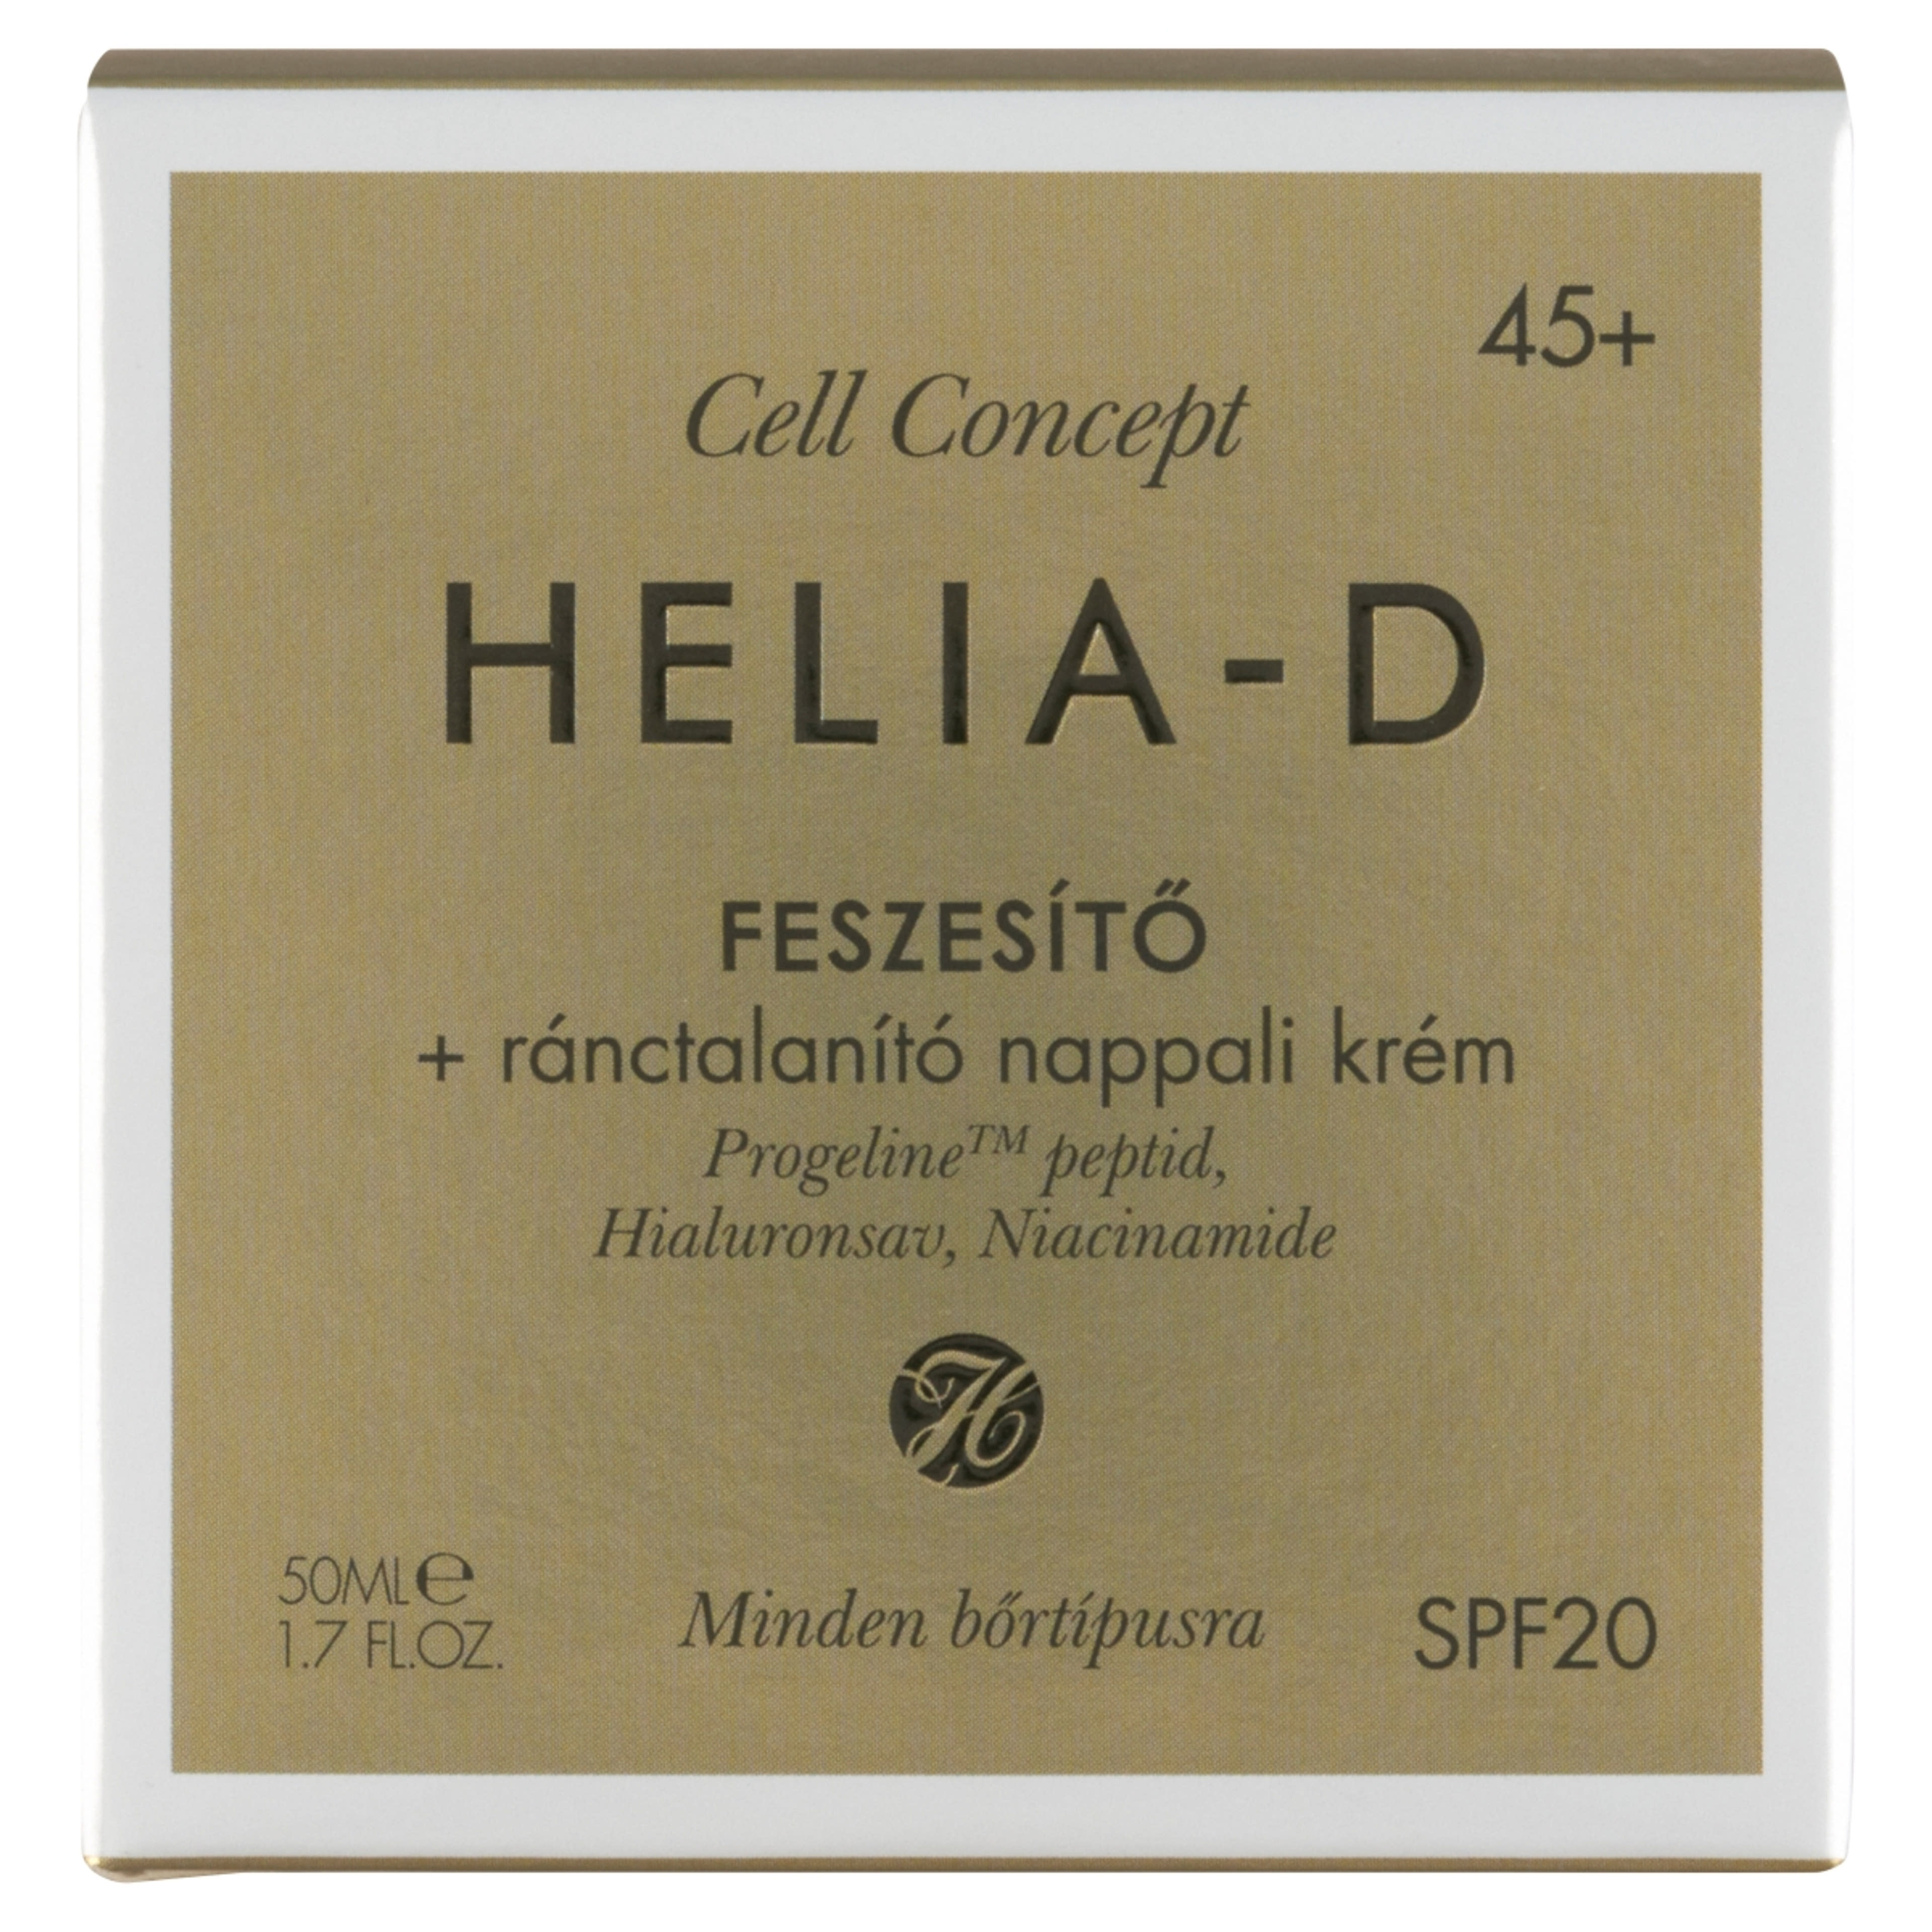 Helia-D Cell Concept feszasítő ránctalanító nappali krém 45+ - 50 ml